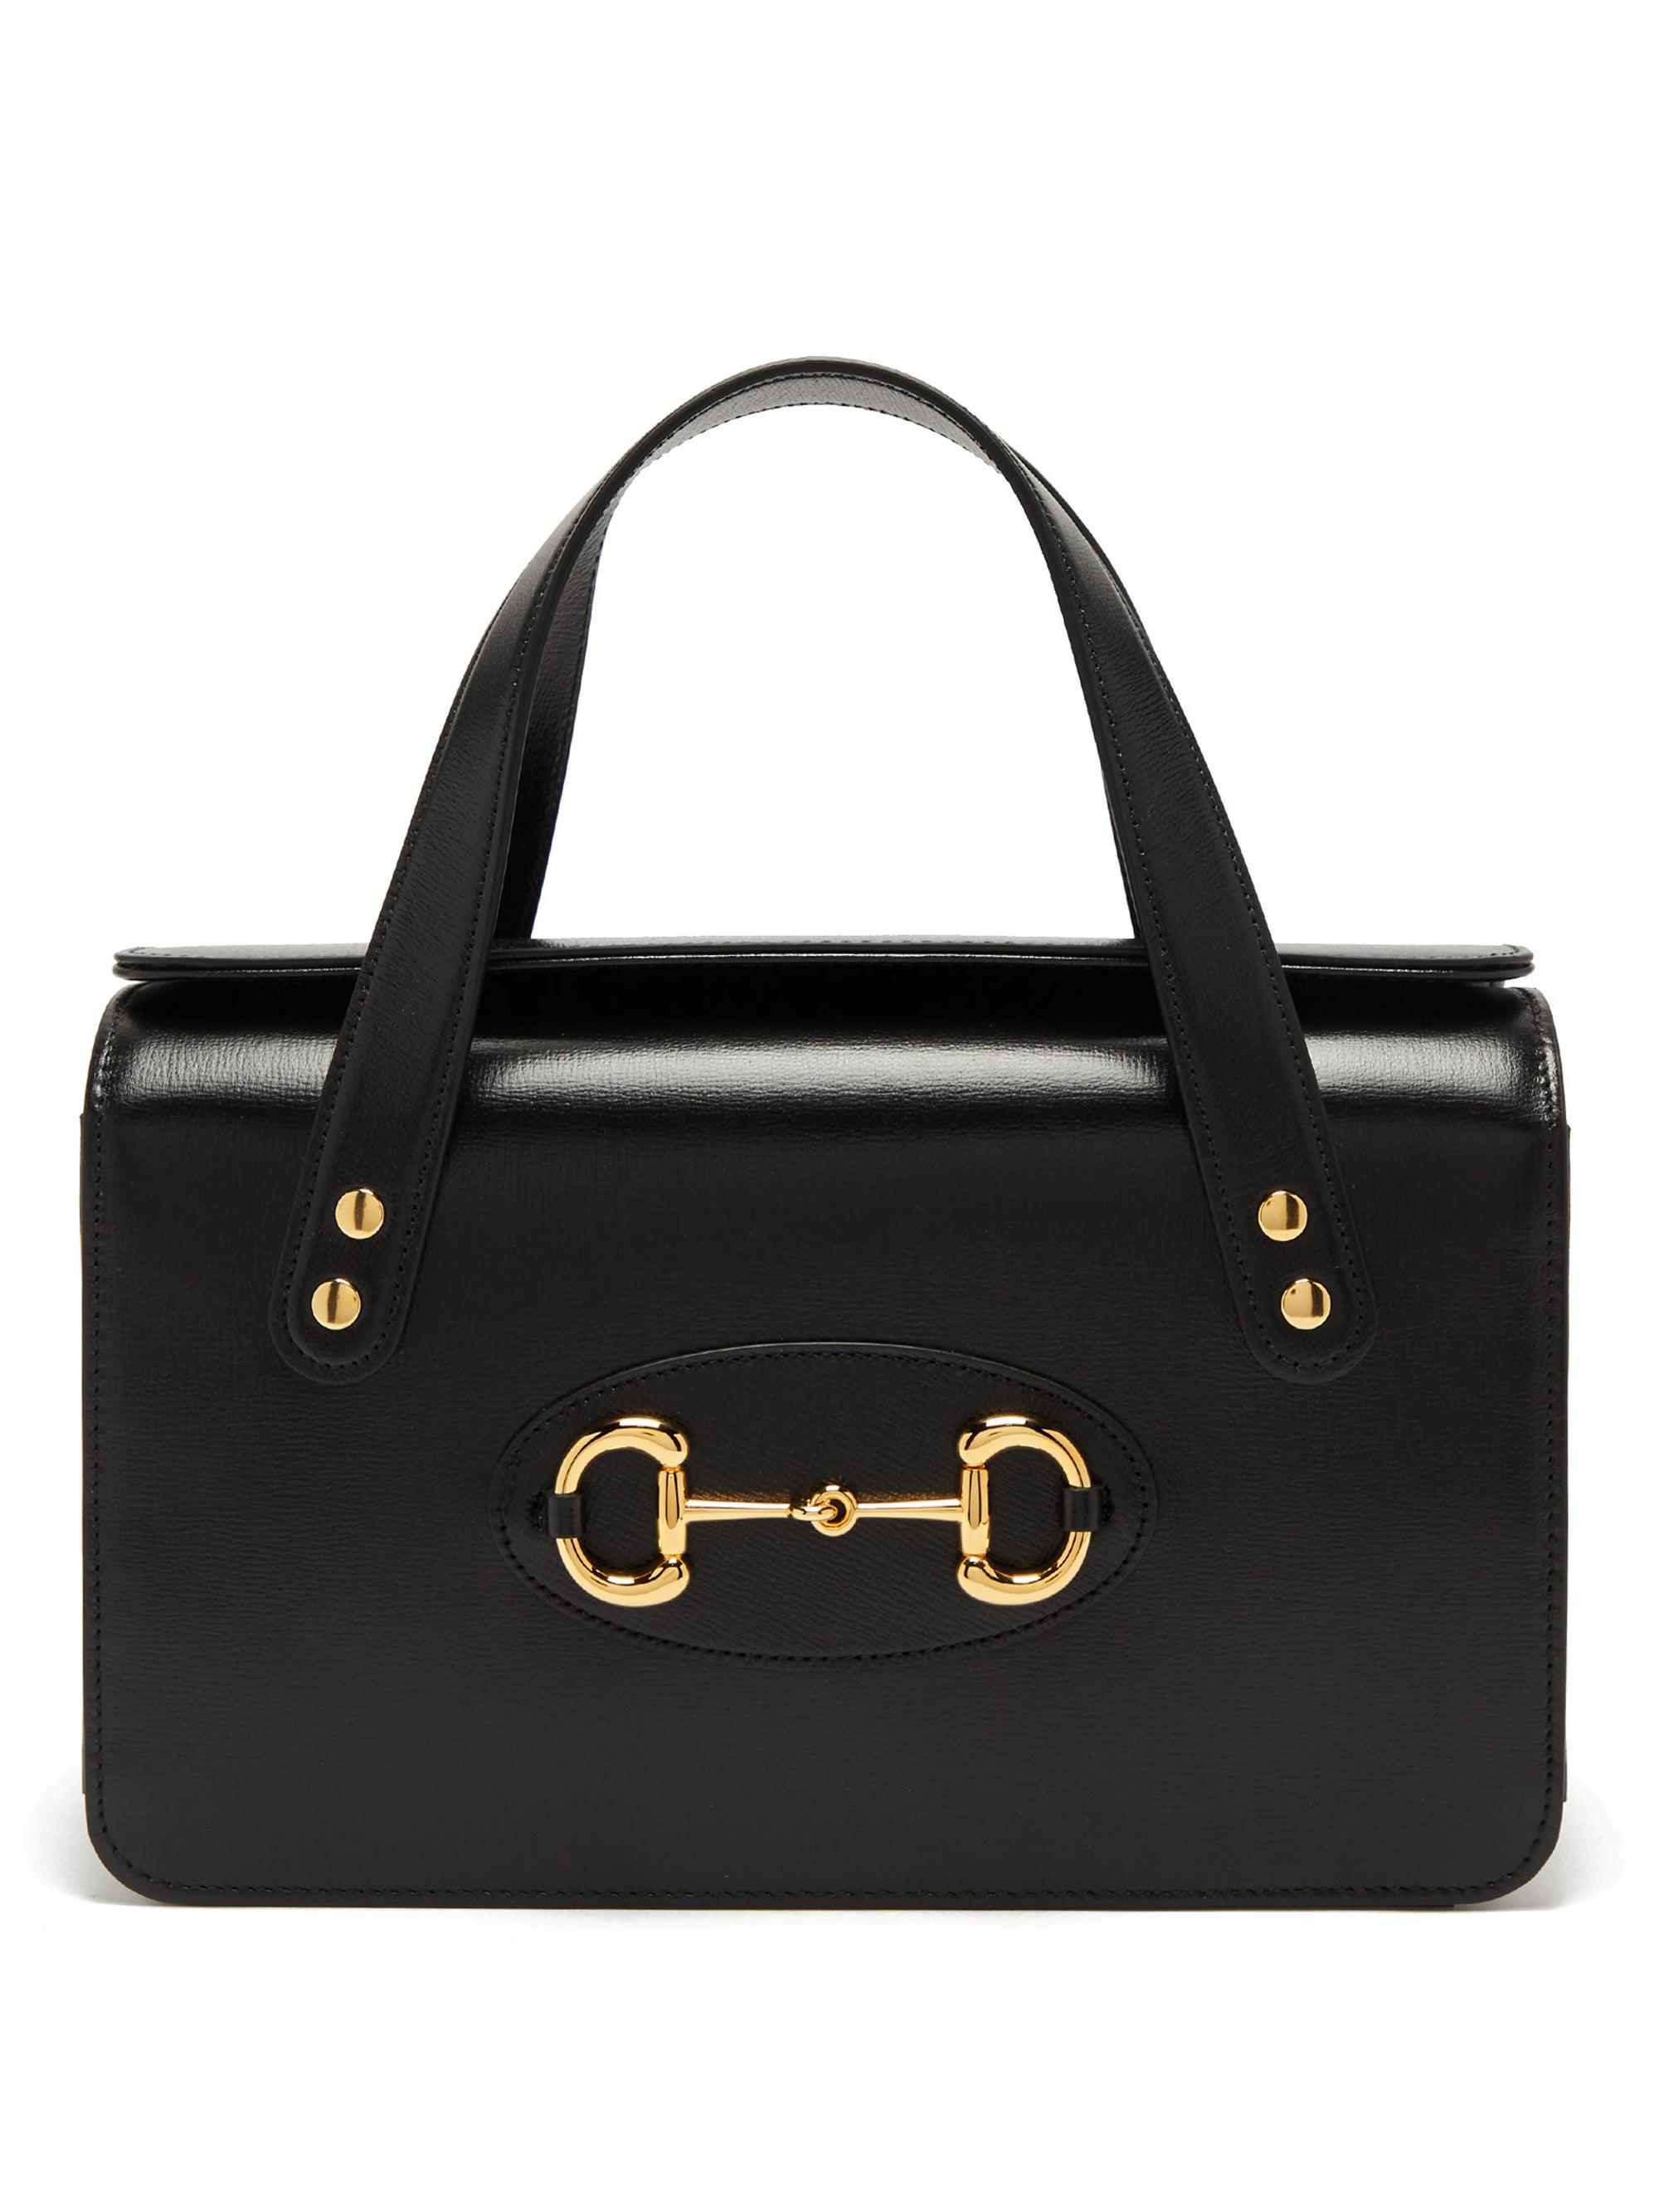 Gucci Horsebit 1955 Small Top Handle Bag in Black | Lyst